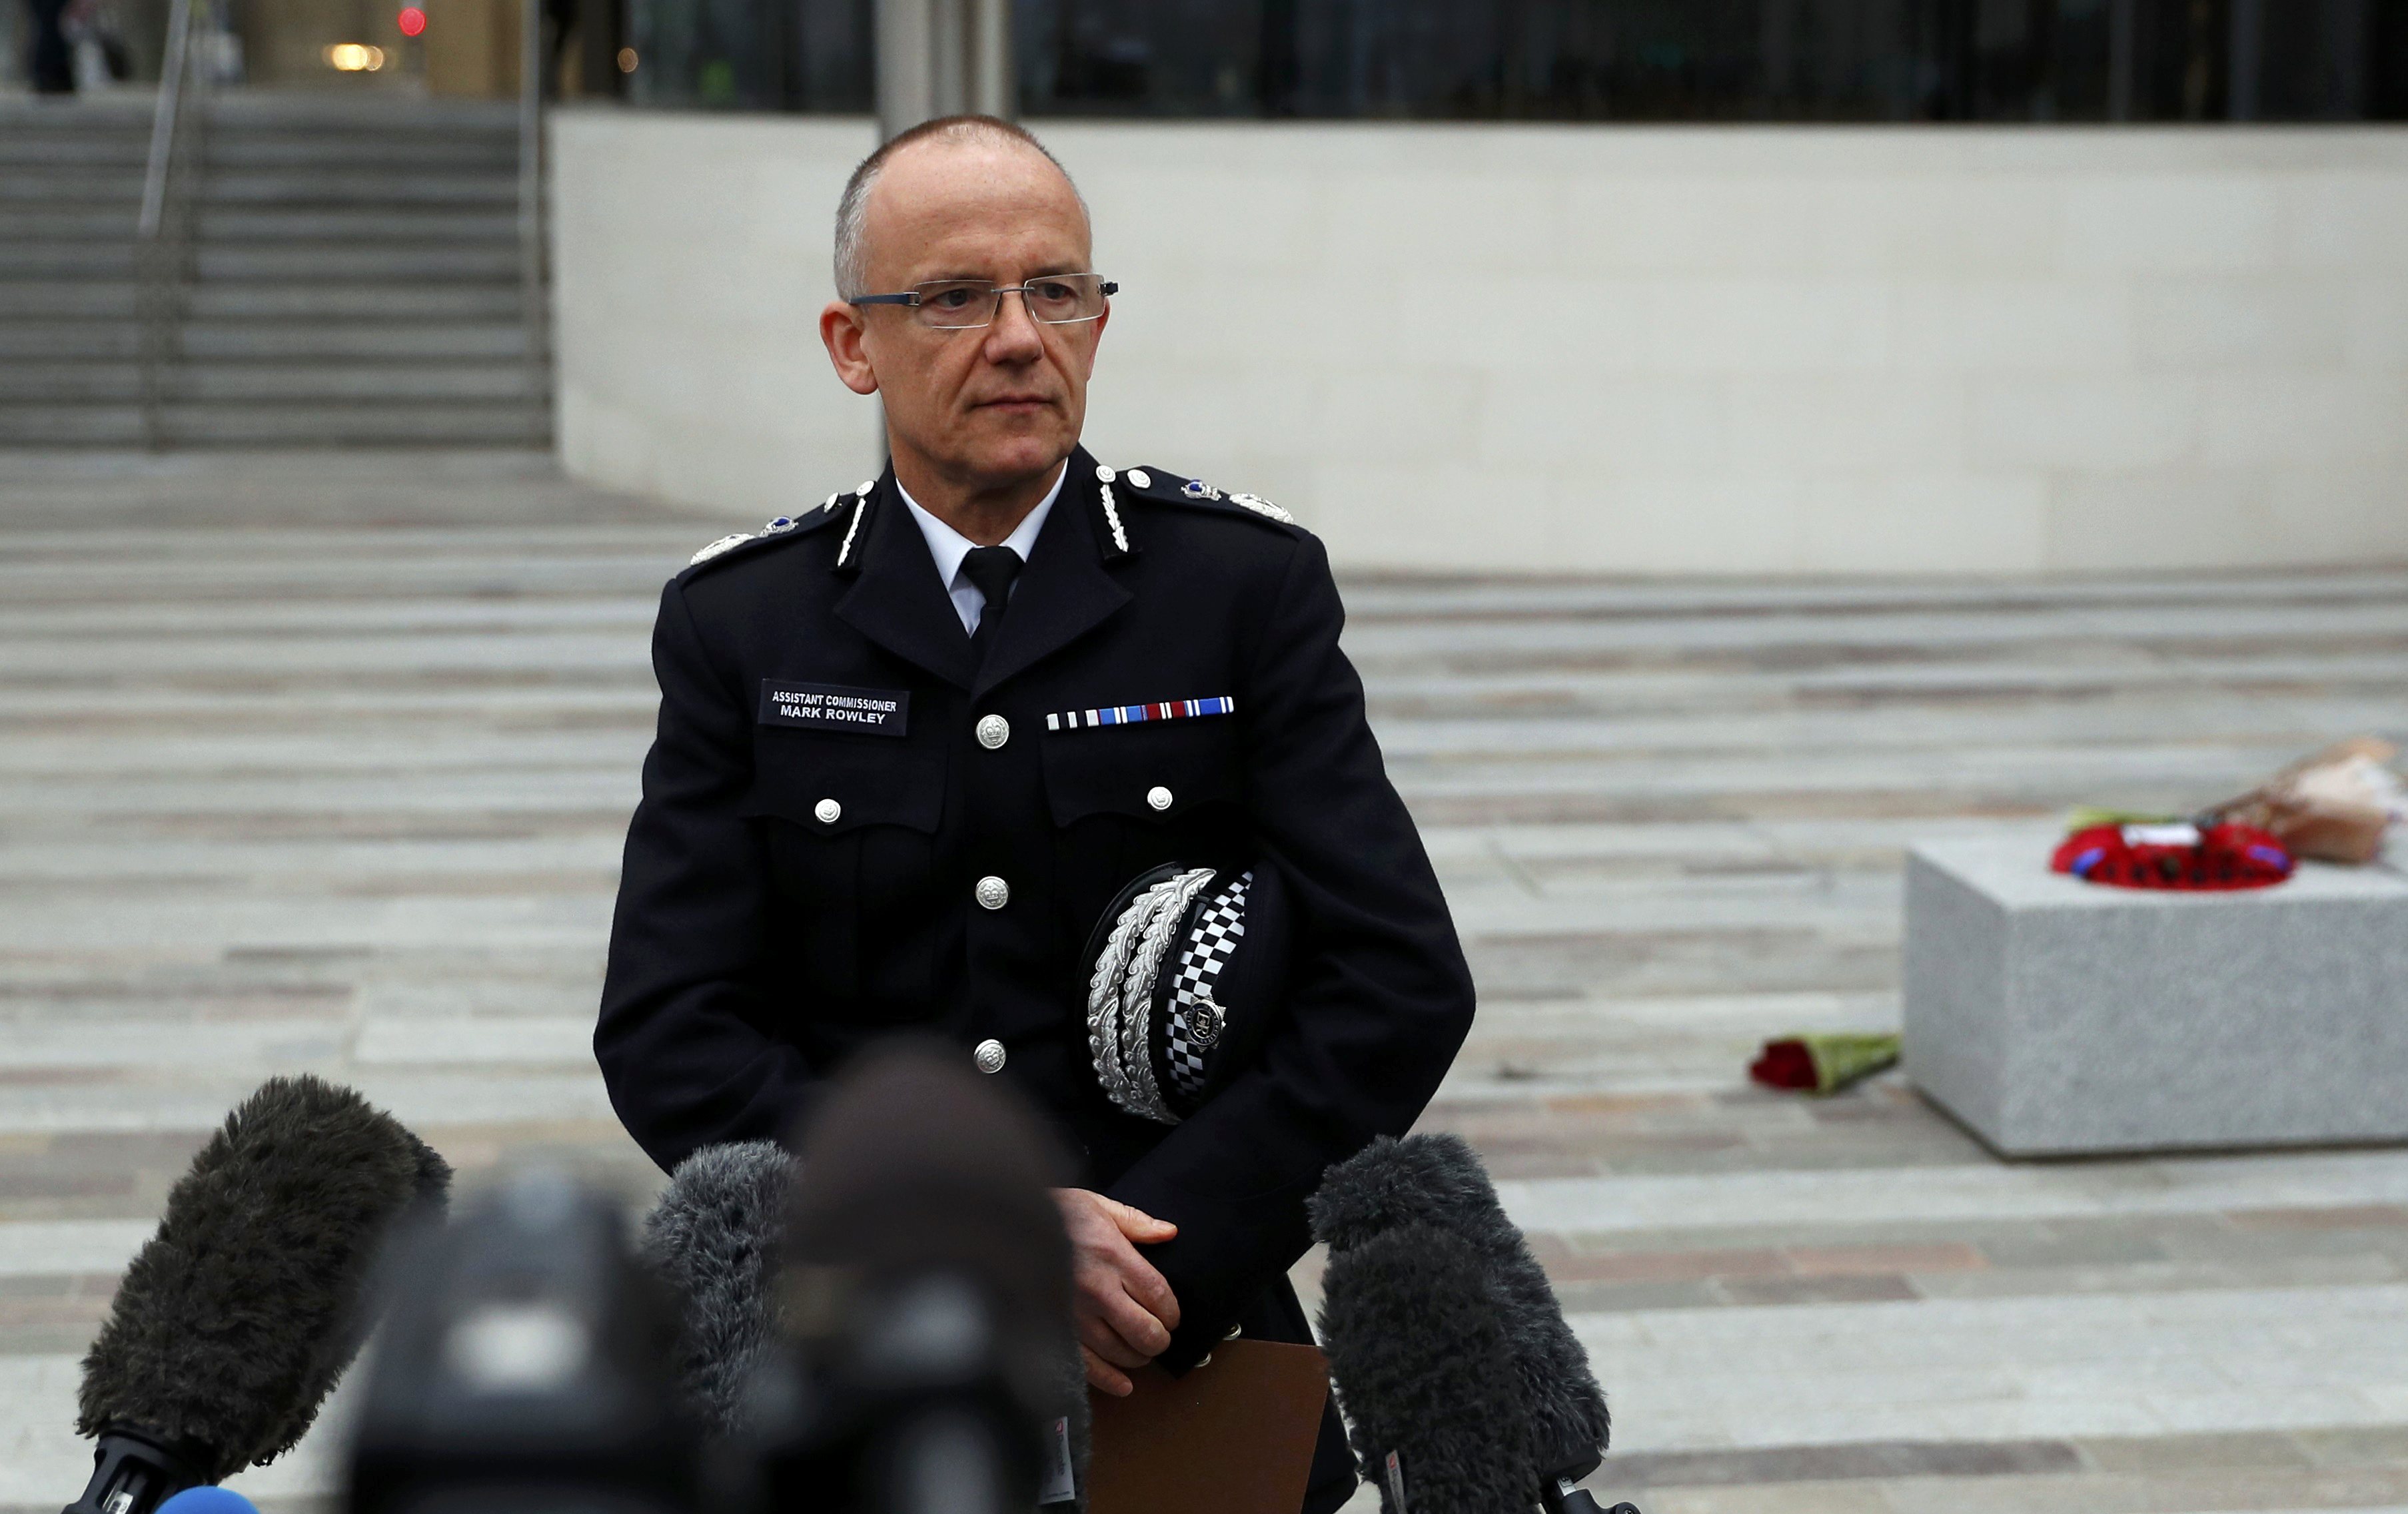 Policia de Londres revela nombre de nacimiento del atacante